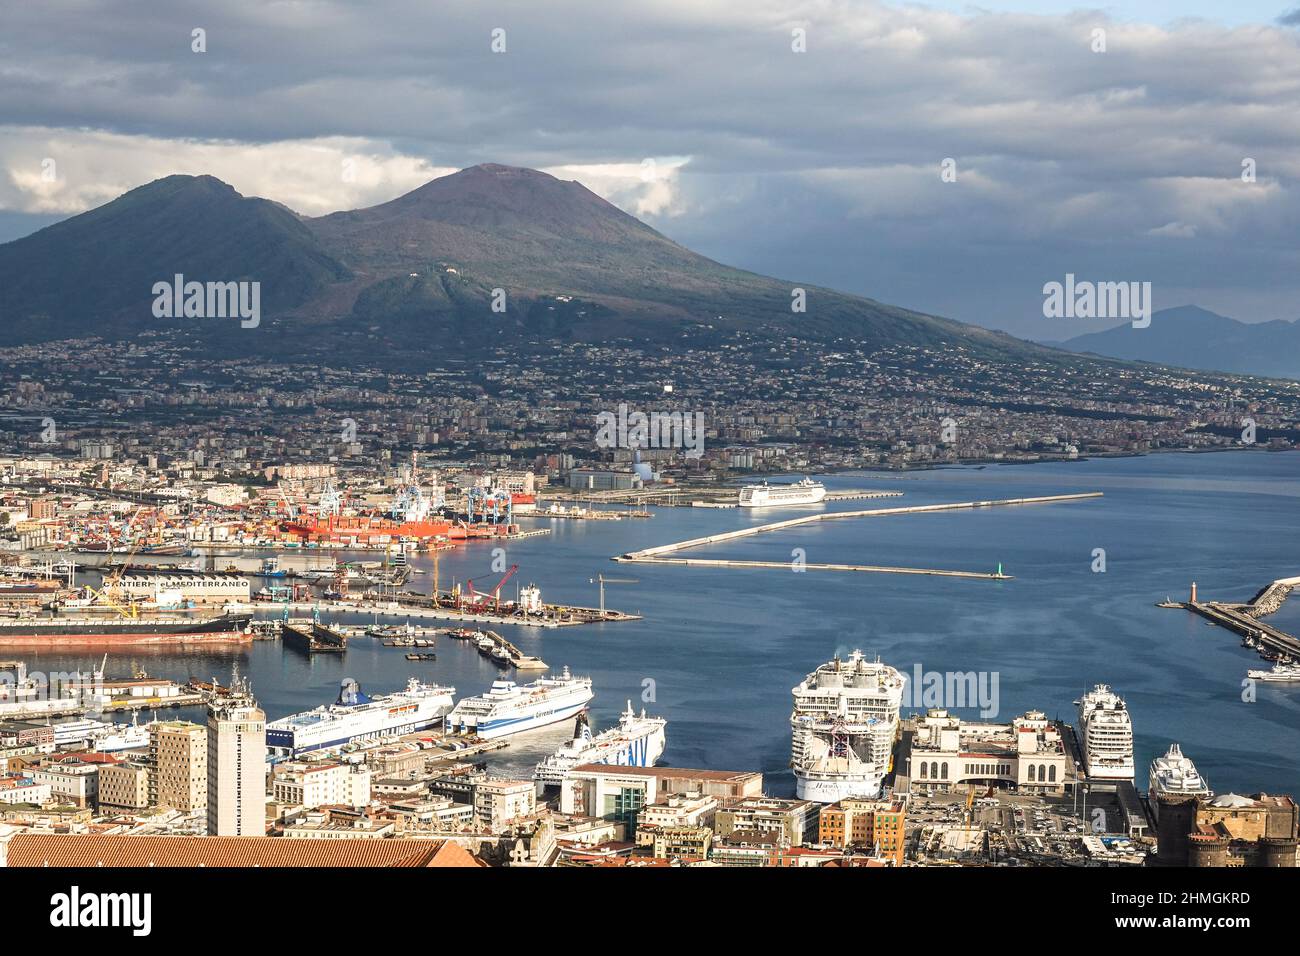 Napoli, Italien - 15 2021. Oktober: Luftaufnahme des Hafens von Napoli, der viele große Schiffe wie das Kreuzschiff Harmony of the Seas und GNV Ferr enthält Stockfoto